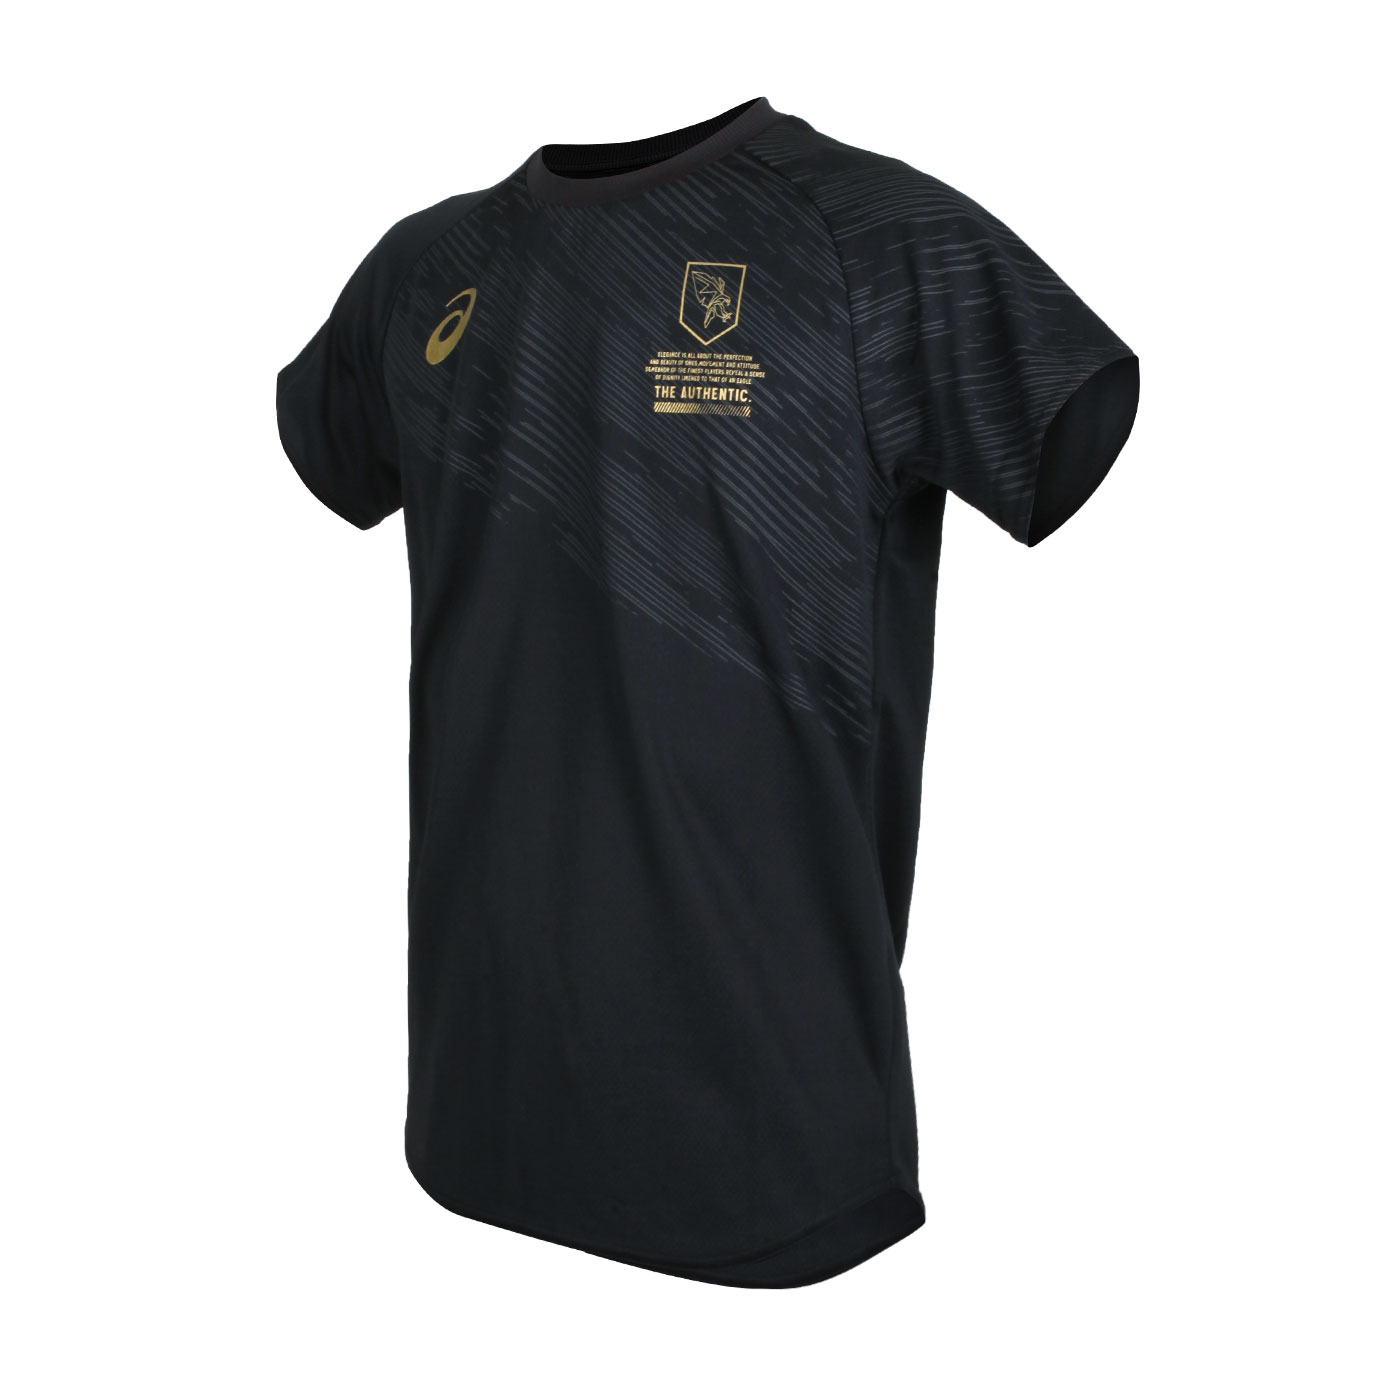 ASICS 男款EL短袖T恤  2051A304-001 - 黑灰金